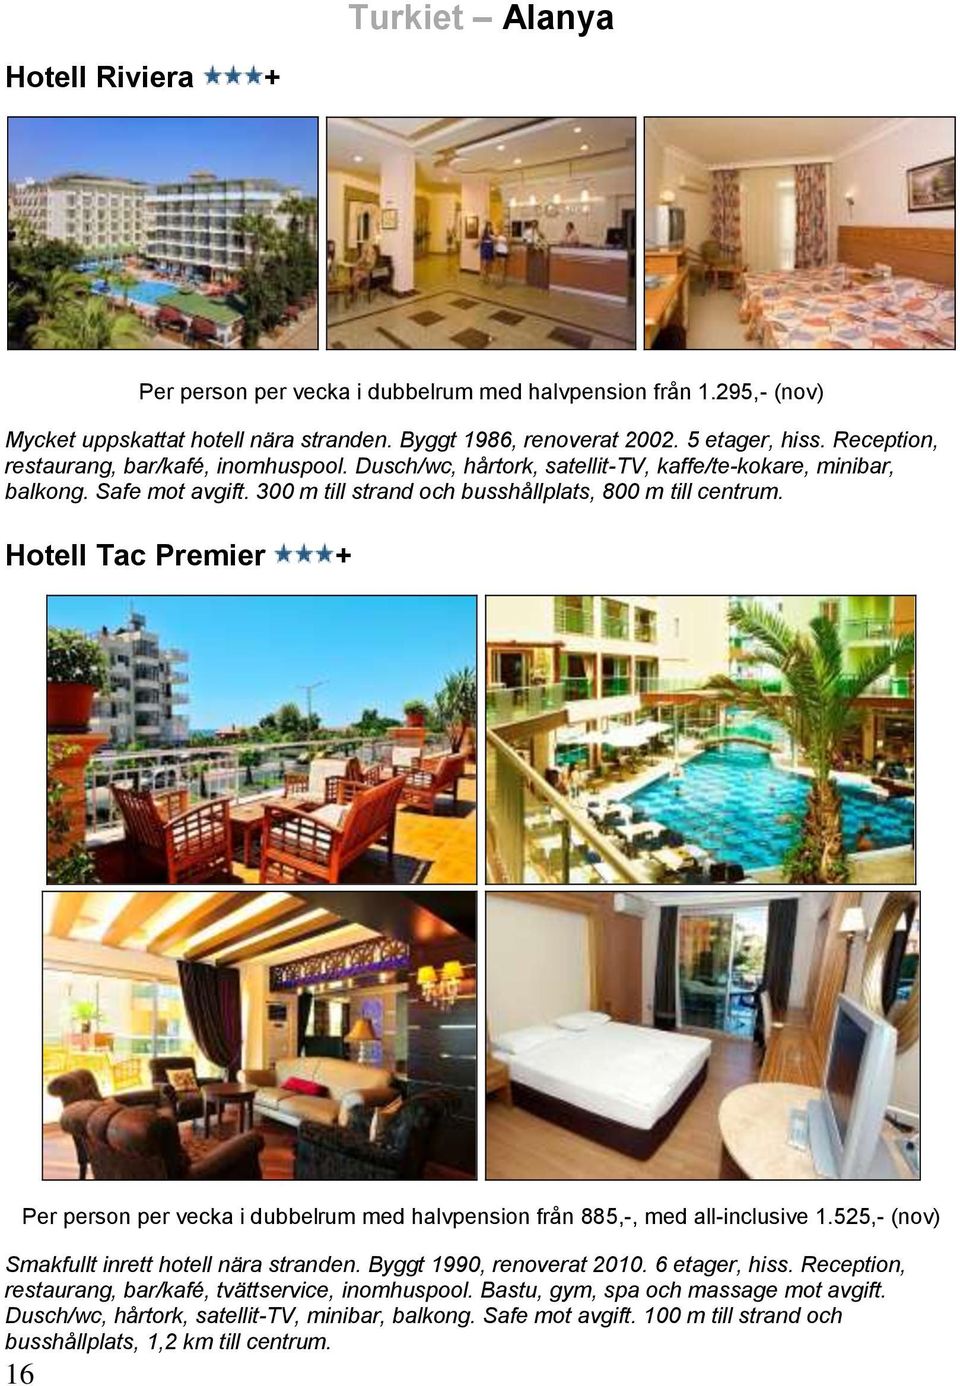 Hotell Tac Premier + 16 Per person per vecka i dubbelrum med halvpension från 885,-, med all-inclusive 1.525,- (nov) Smakfullt inrett hotell nära stranden. Byggt 1990, renoverat 2010. 6 etager, hiss.